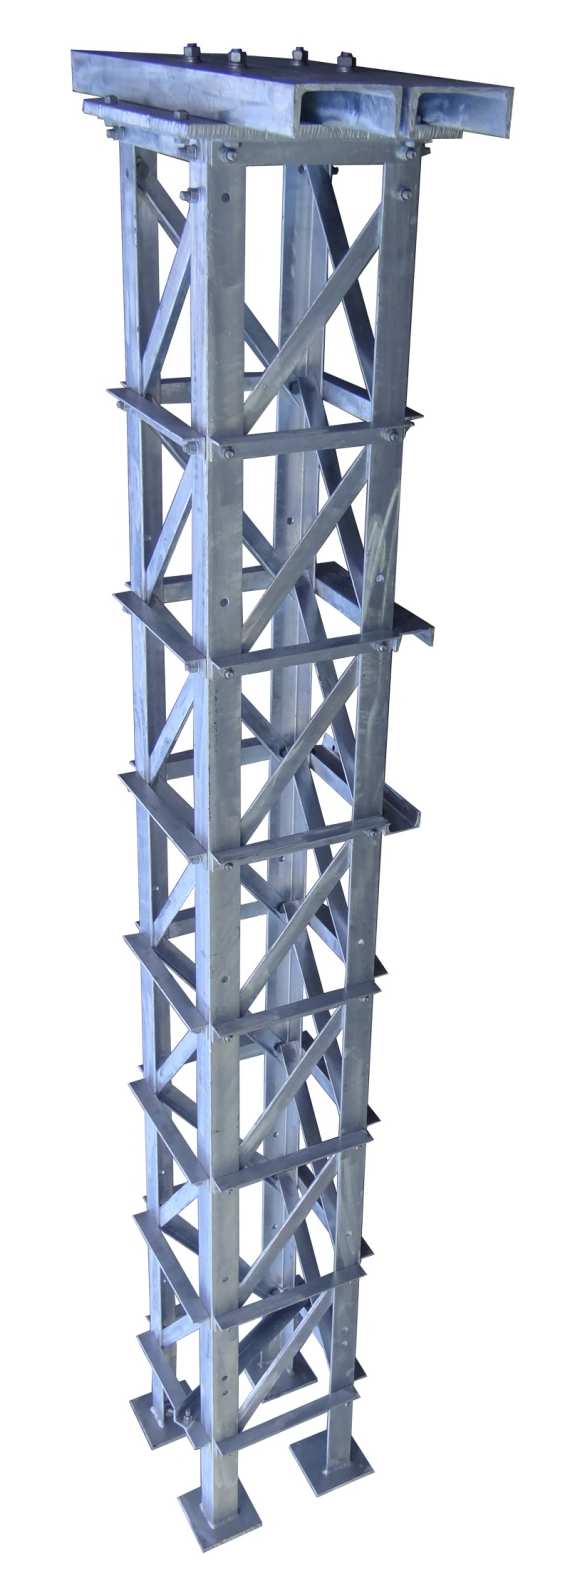 Torres tipo Celosía Utilizados para instalaciones en Sub-Estaciones eléctricas.